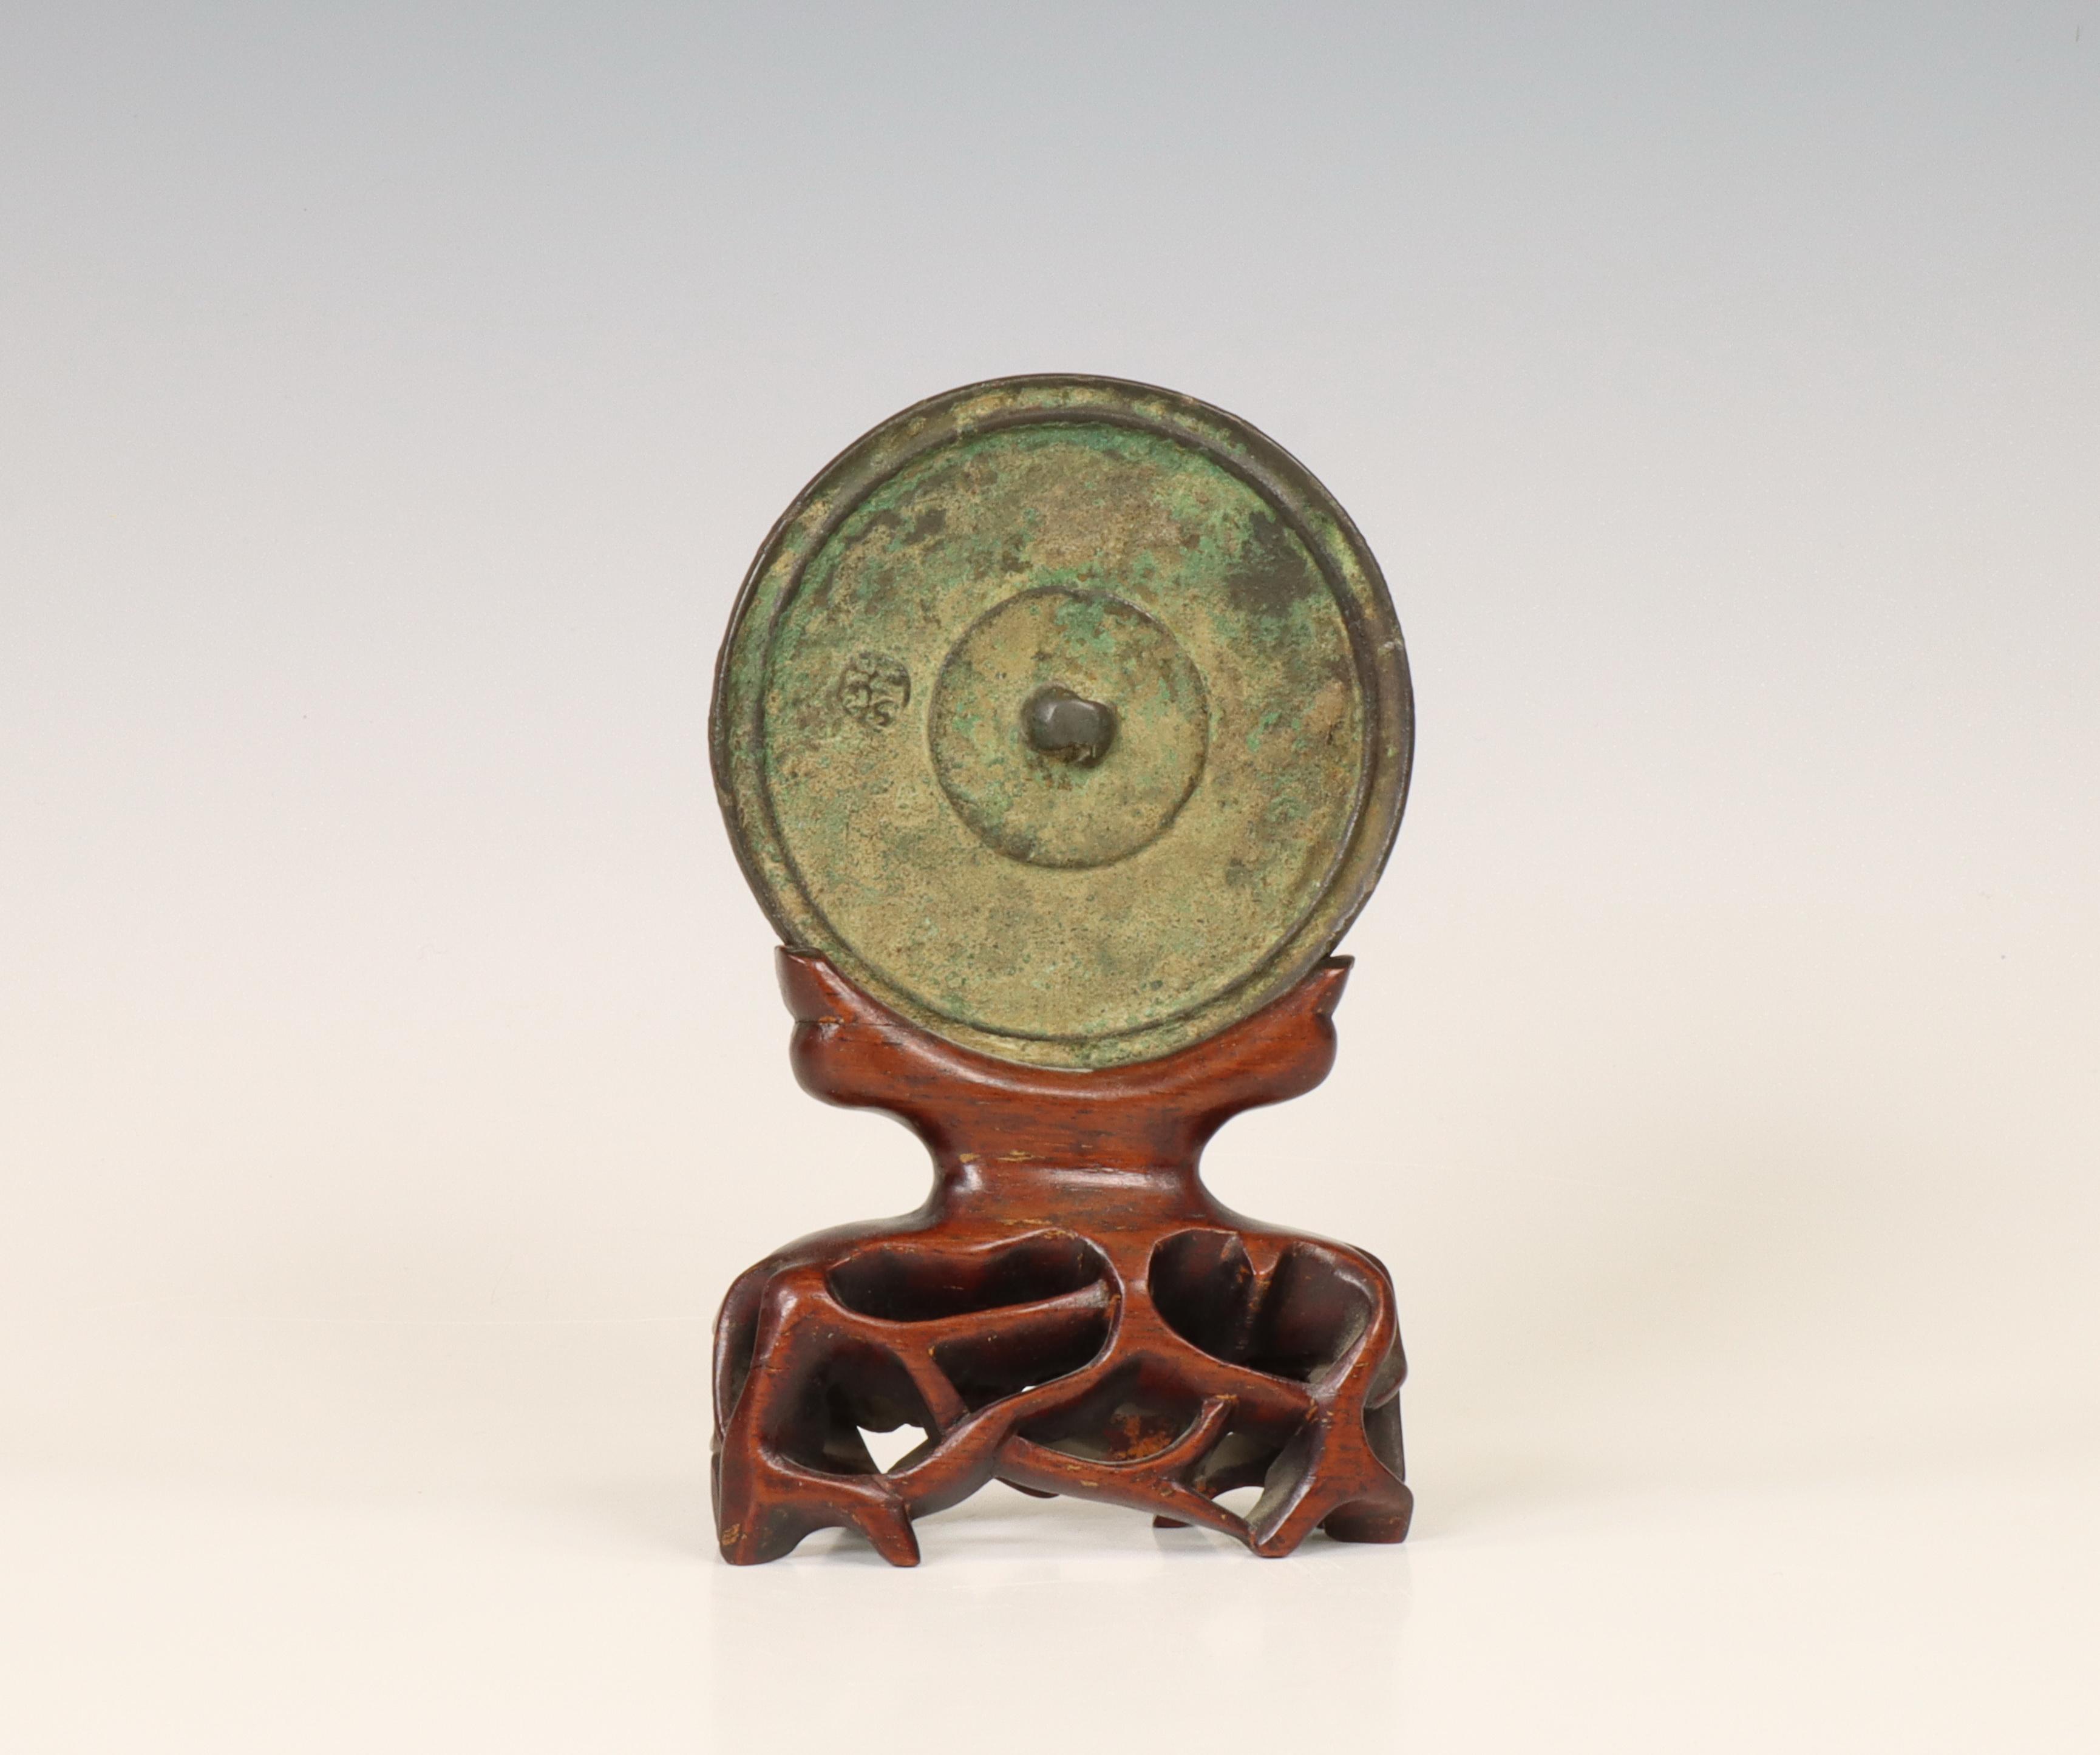 China, a bronze circular mirror, possibly Tang dynasty (618-907),